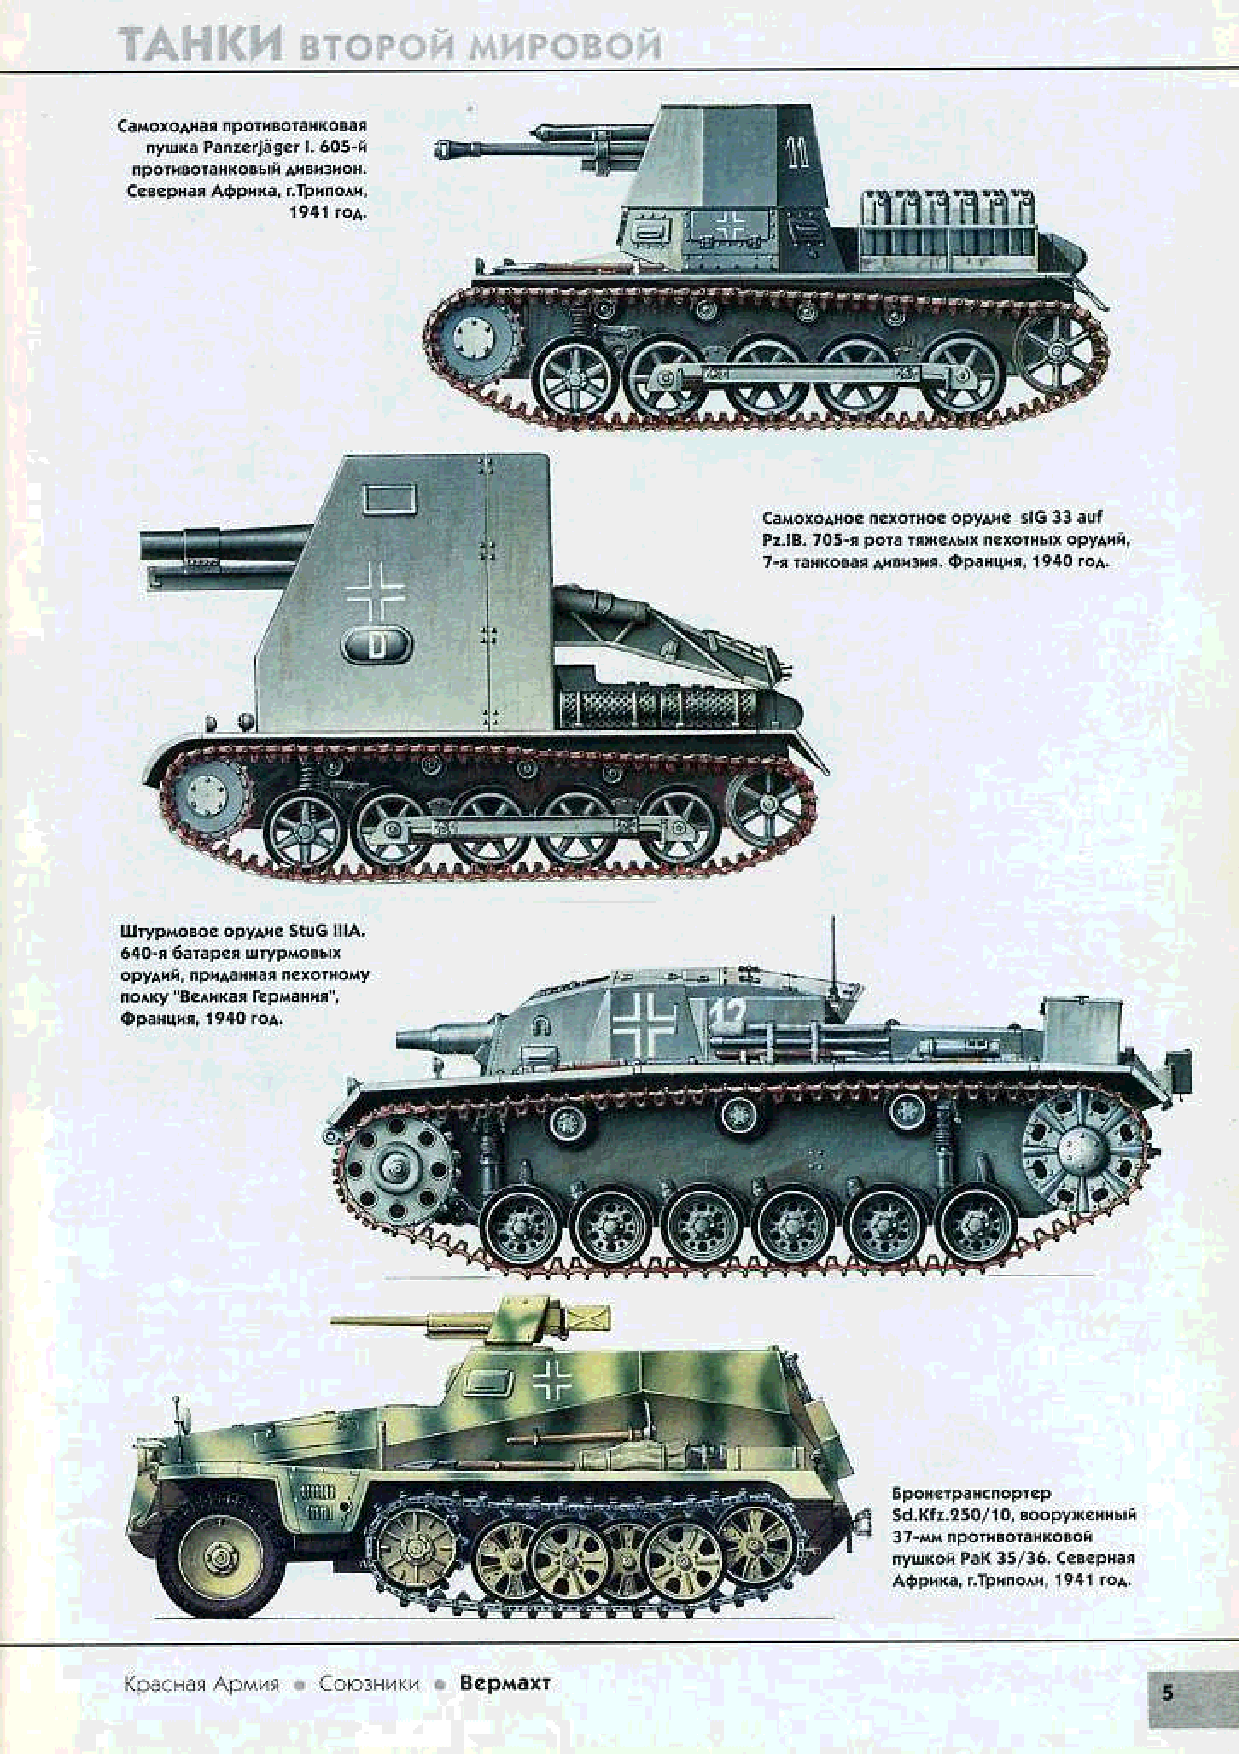 Названия танков вермахта. Танки Германии второй мировой войны 1939-1945. Немецкие танки 2 мировой названия. Немецкие тяжелые танки 2 мировой. Танки 2 мировой войны Германии с названием.